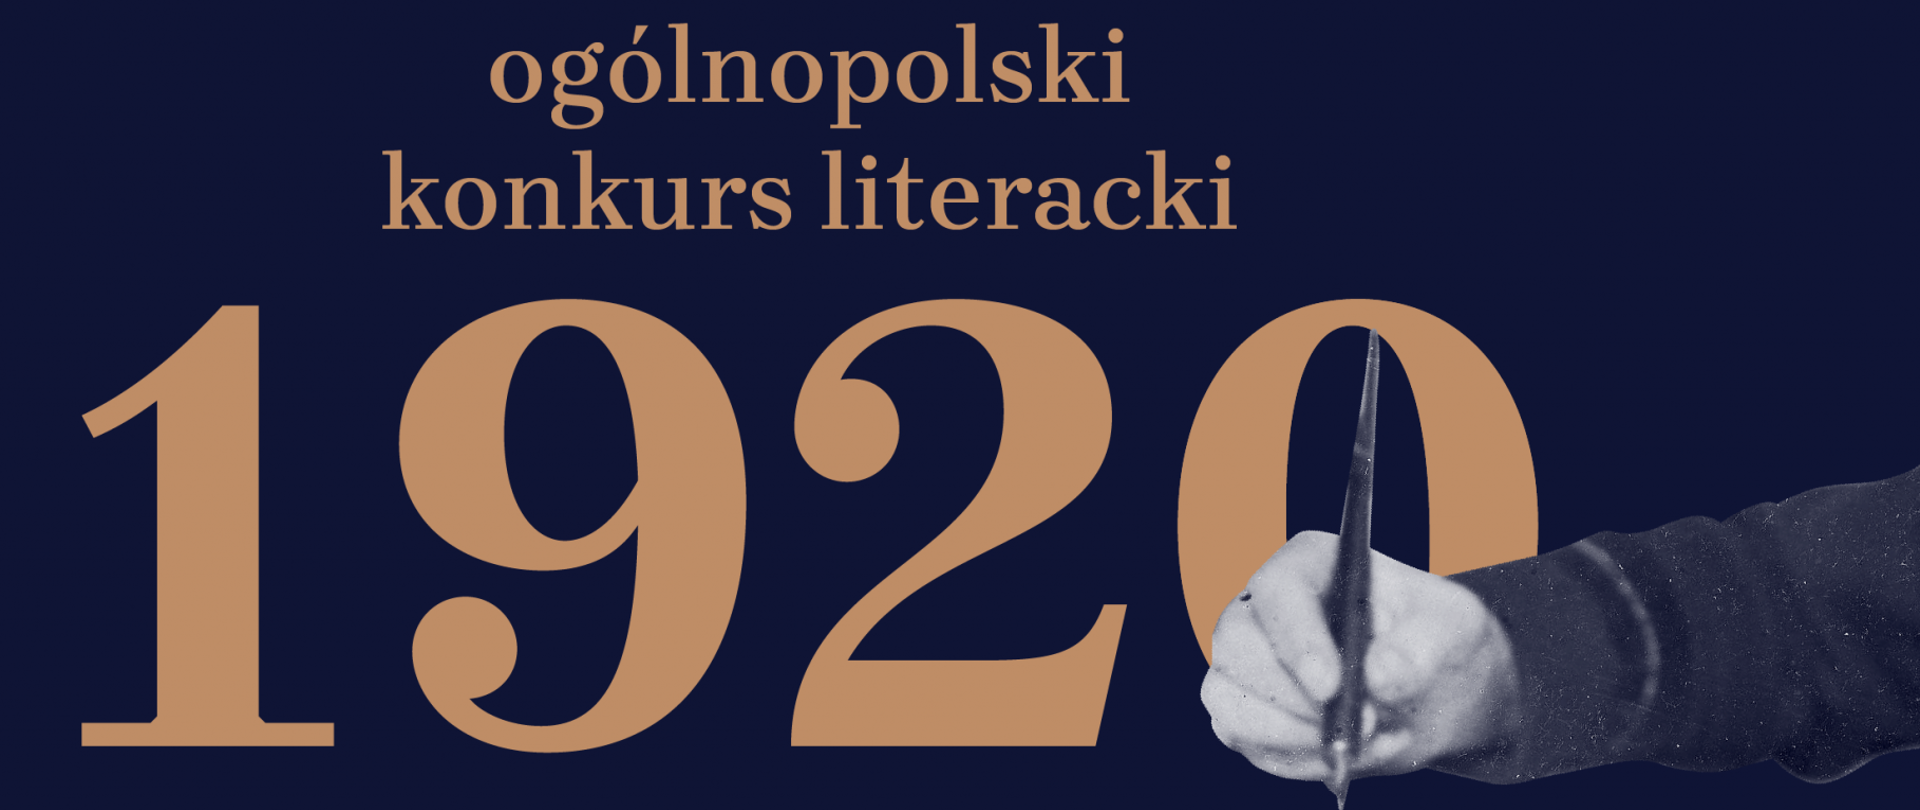 1920 – ogólnopolski konkurs literacki w setną rocznicę Bitwy Warszawskiej